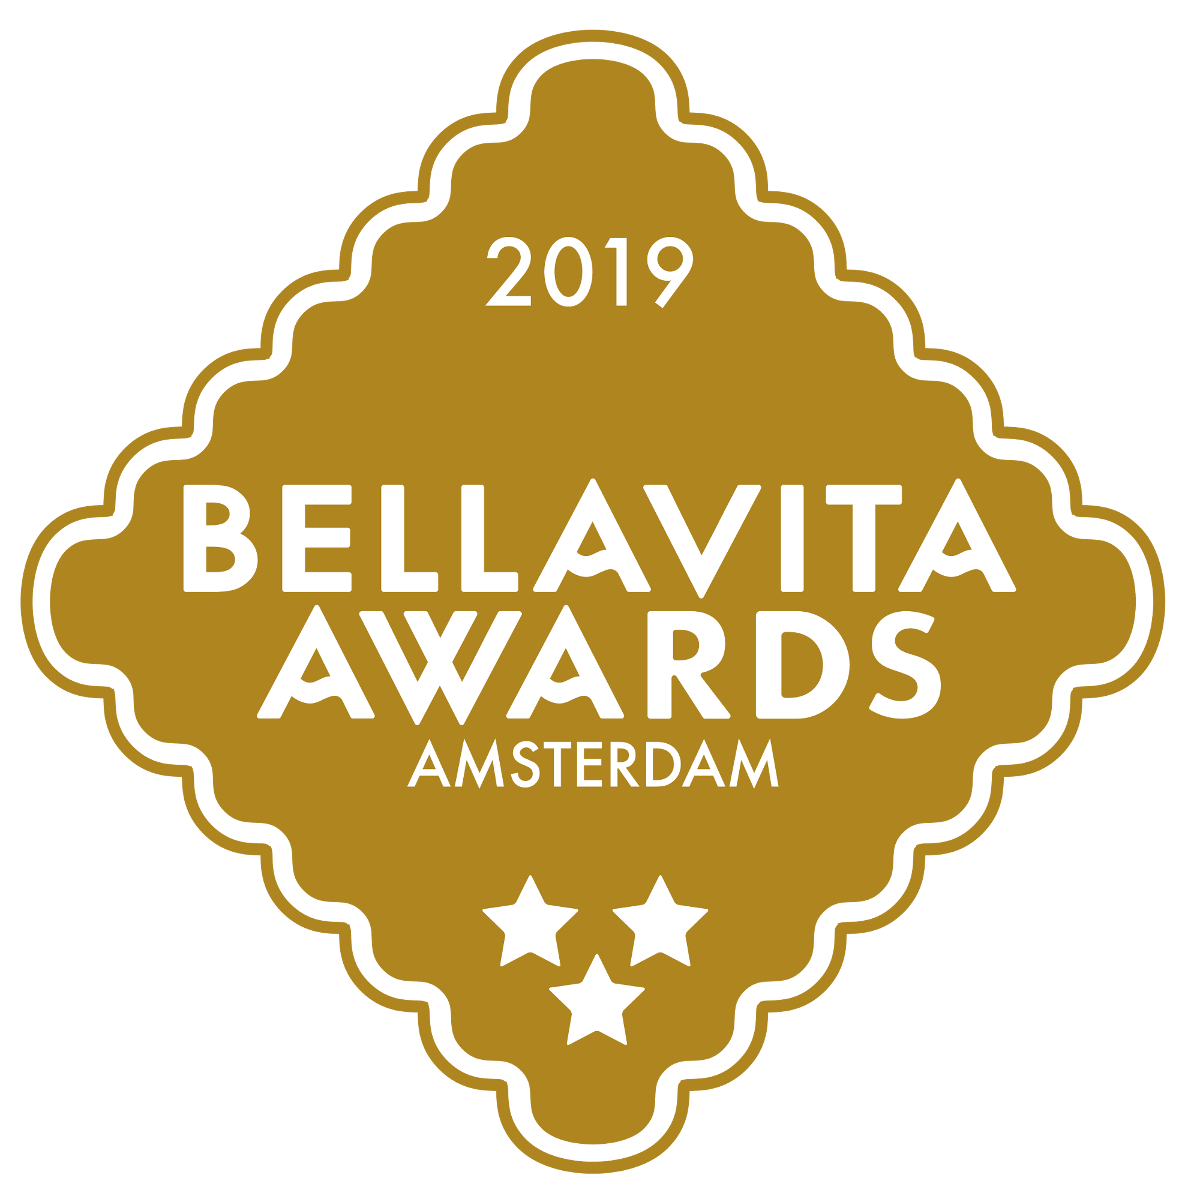 Premio Bellavita Awards Amsterdam 2019